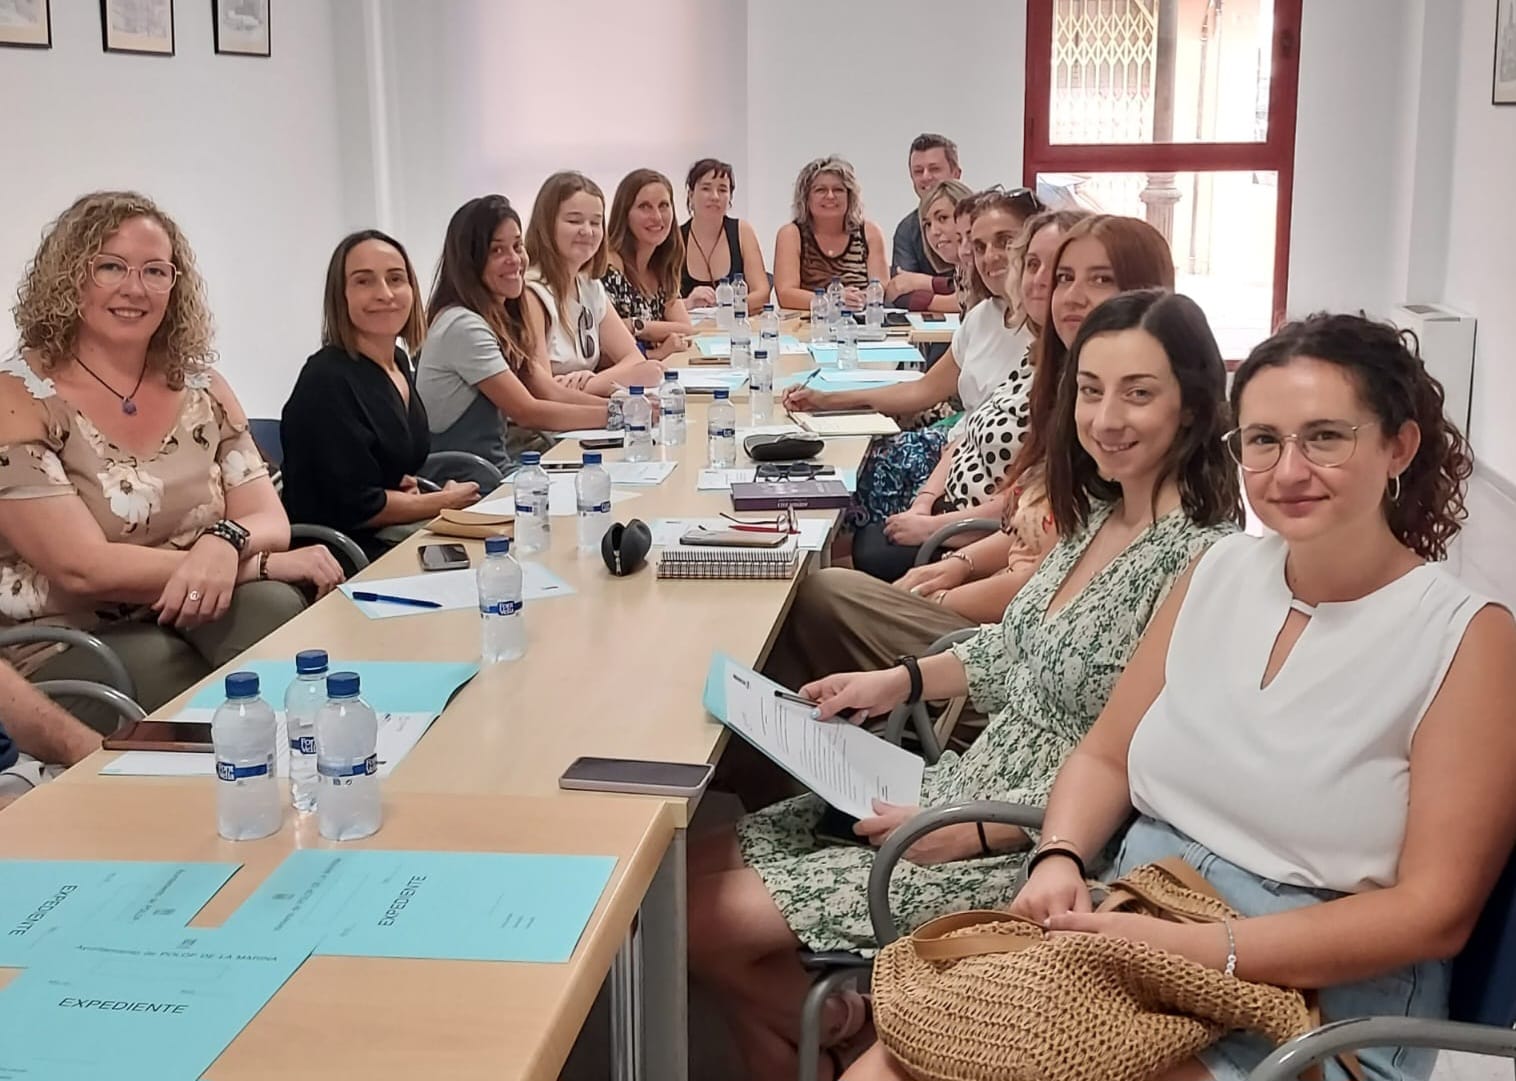 El Consell Comarcal per la Igualtat de la Marina Baixa celebra la seua reunió mensual a Polop